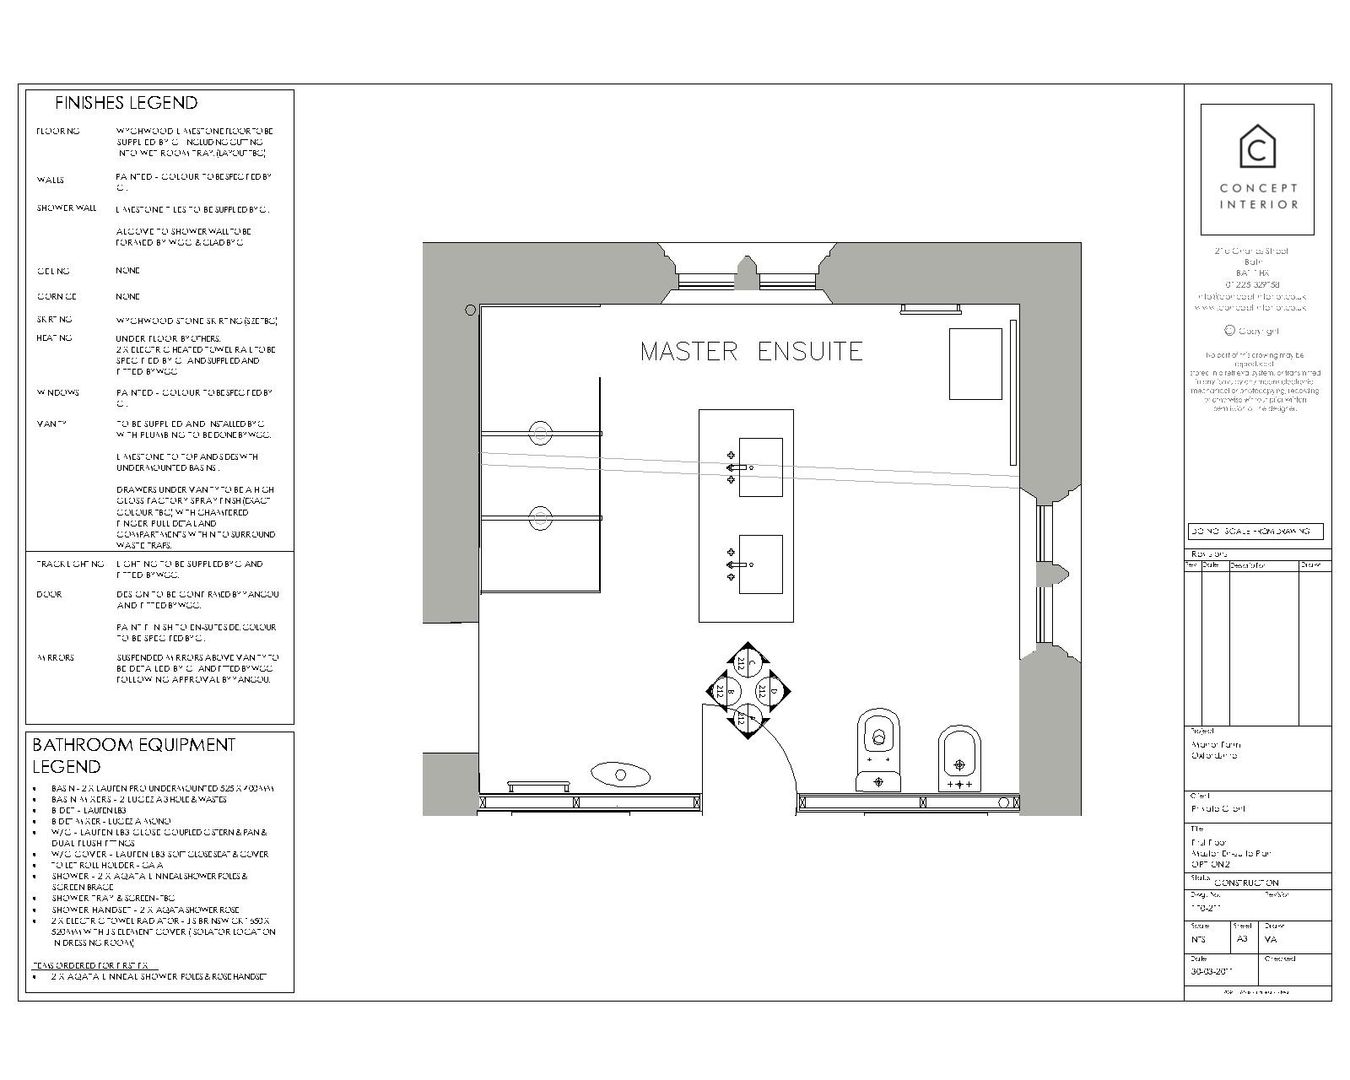 คลาสสิก โดย Concept Interior Design & Decoration Ltd, คลาสสิค